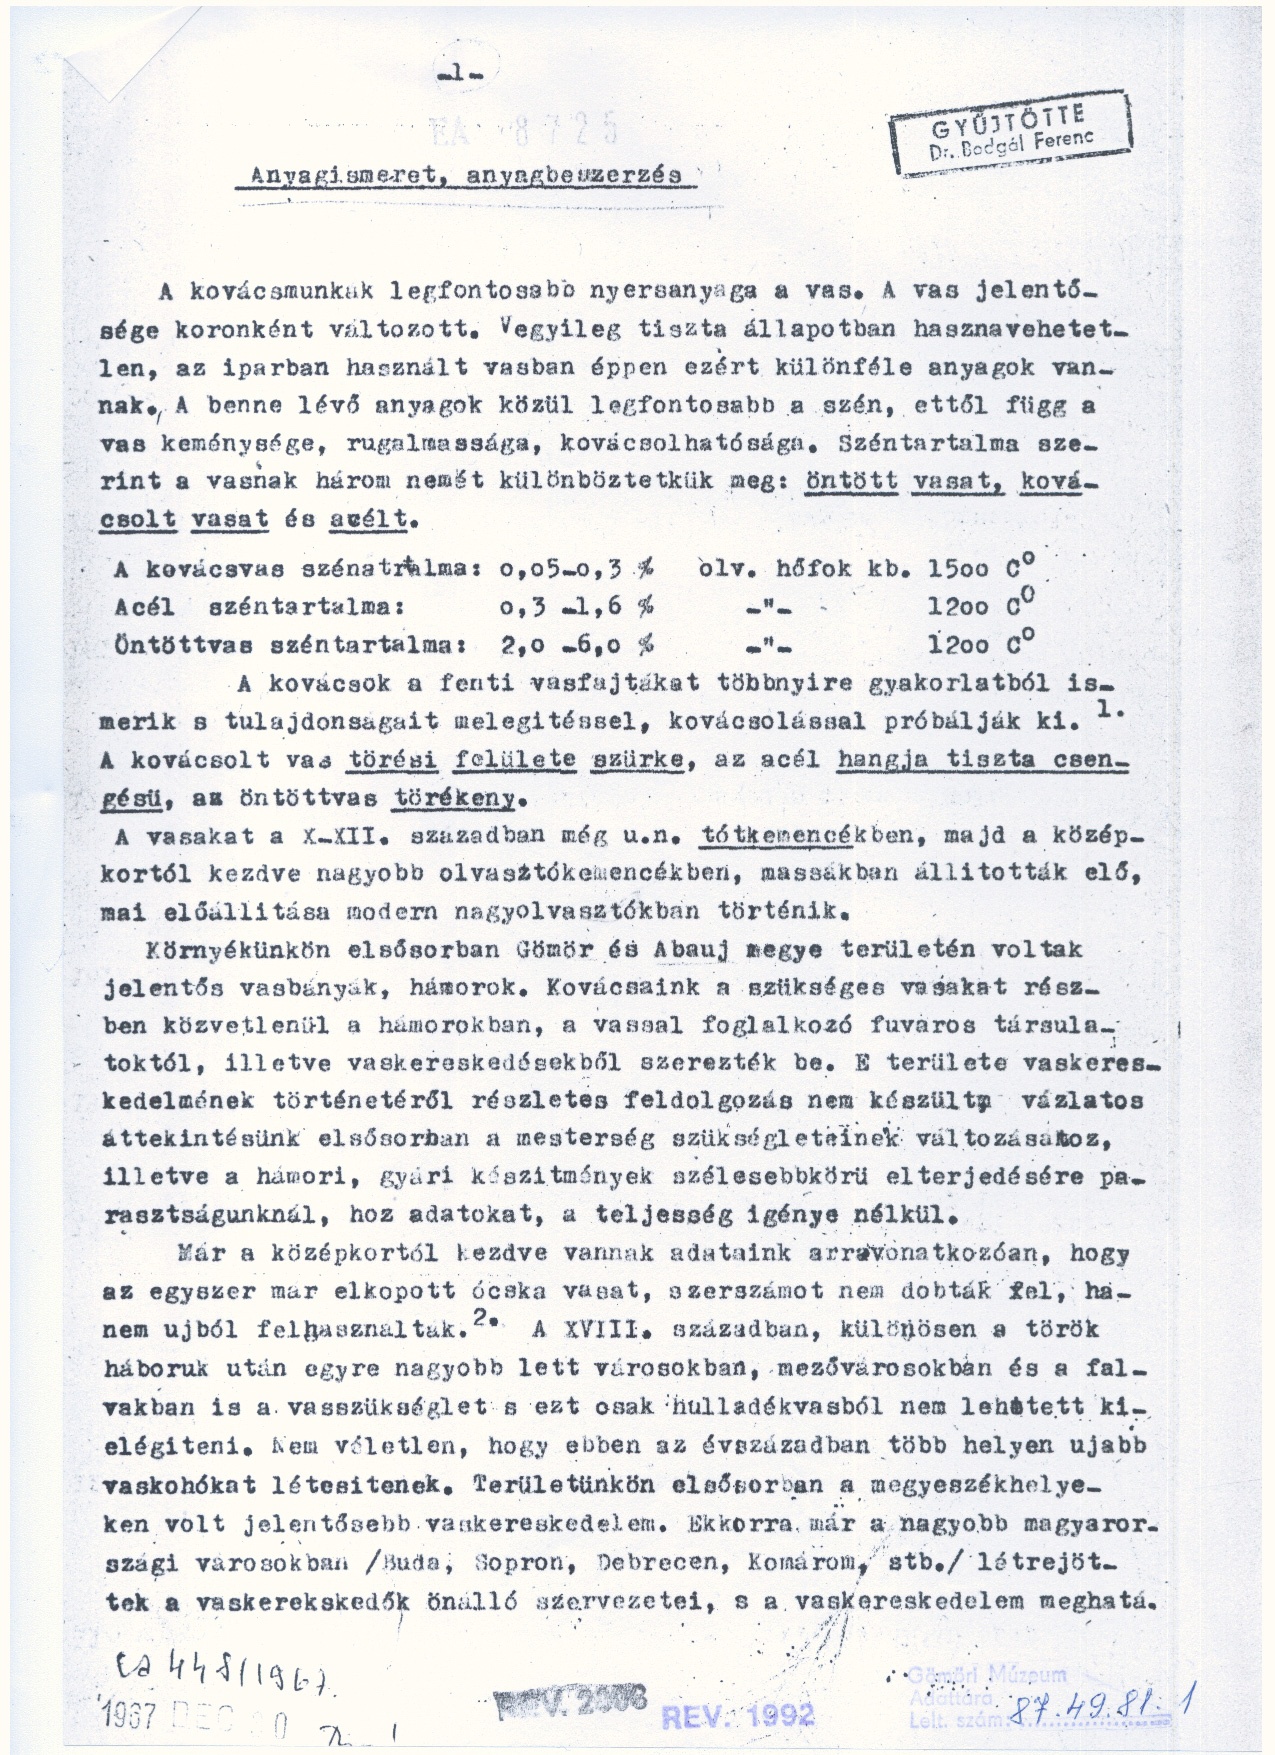 Bodgál Ferenc: Anyagismeret, anyagbeszerzés 1967 (Gömöri Múzeum, Putnok CC BY-NC-SA)